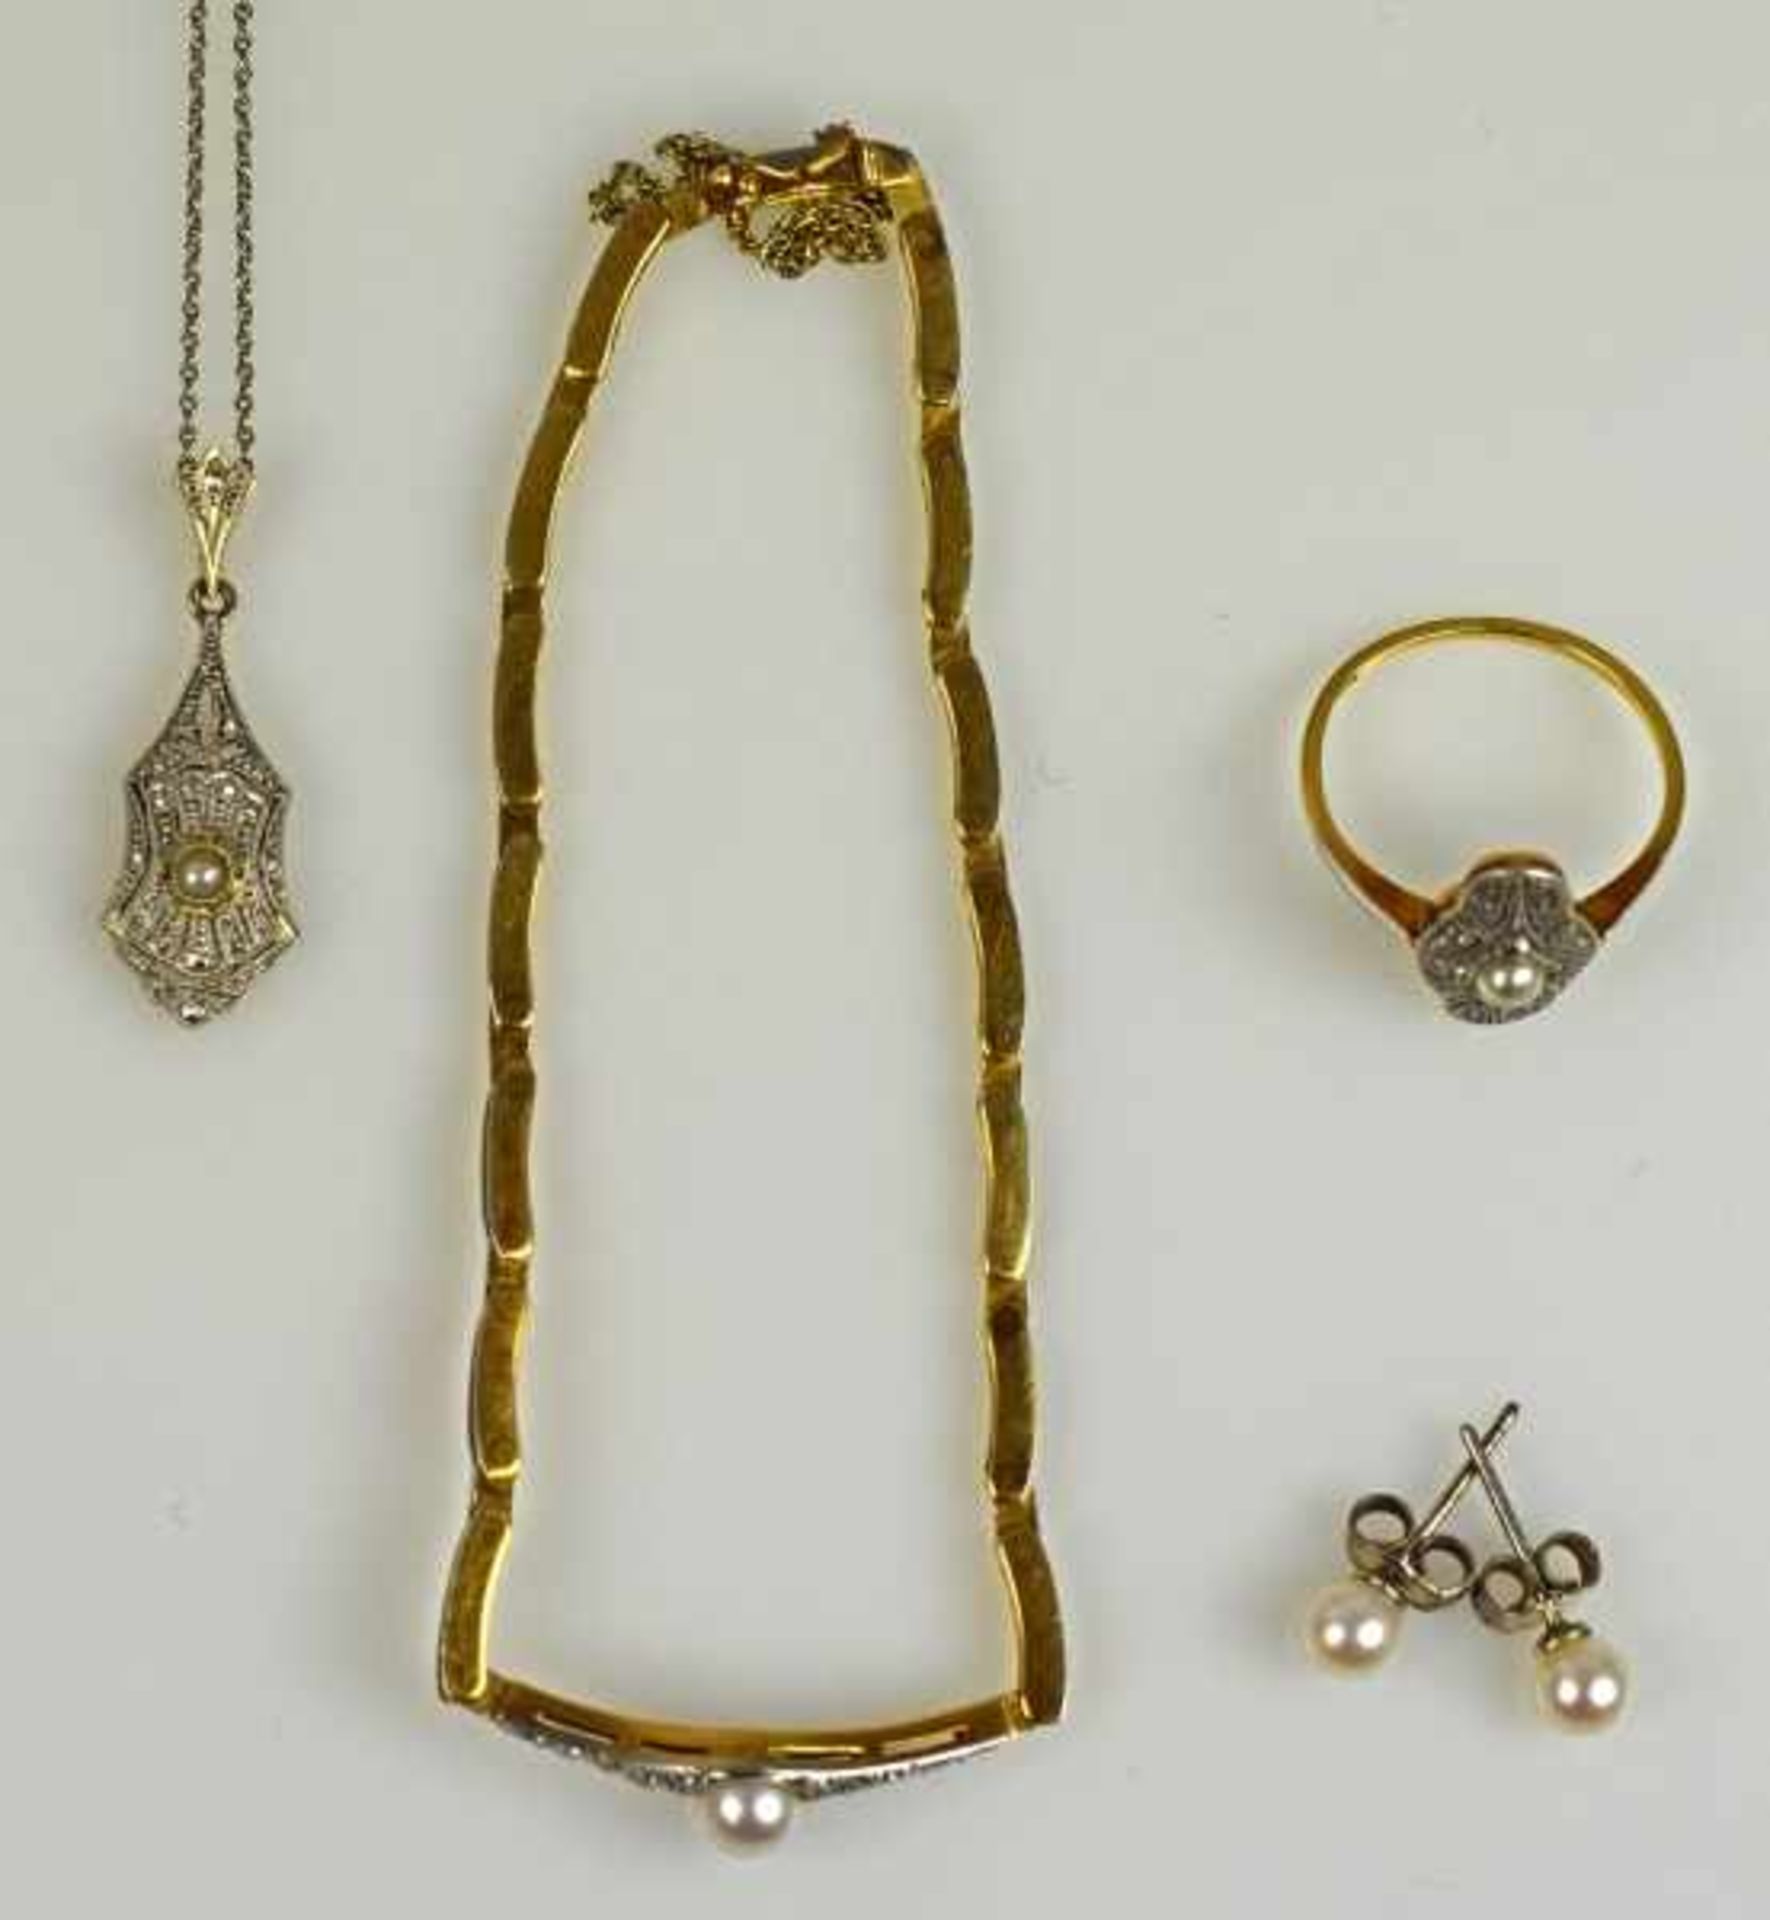 PARÜRE fünfteilig: Armband L 19cm, Kette mit Anhänger, L 41cm, und Ring Gr. 51, besetzt mit